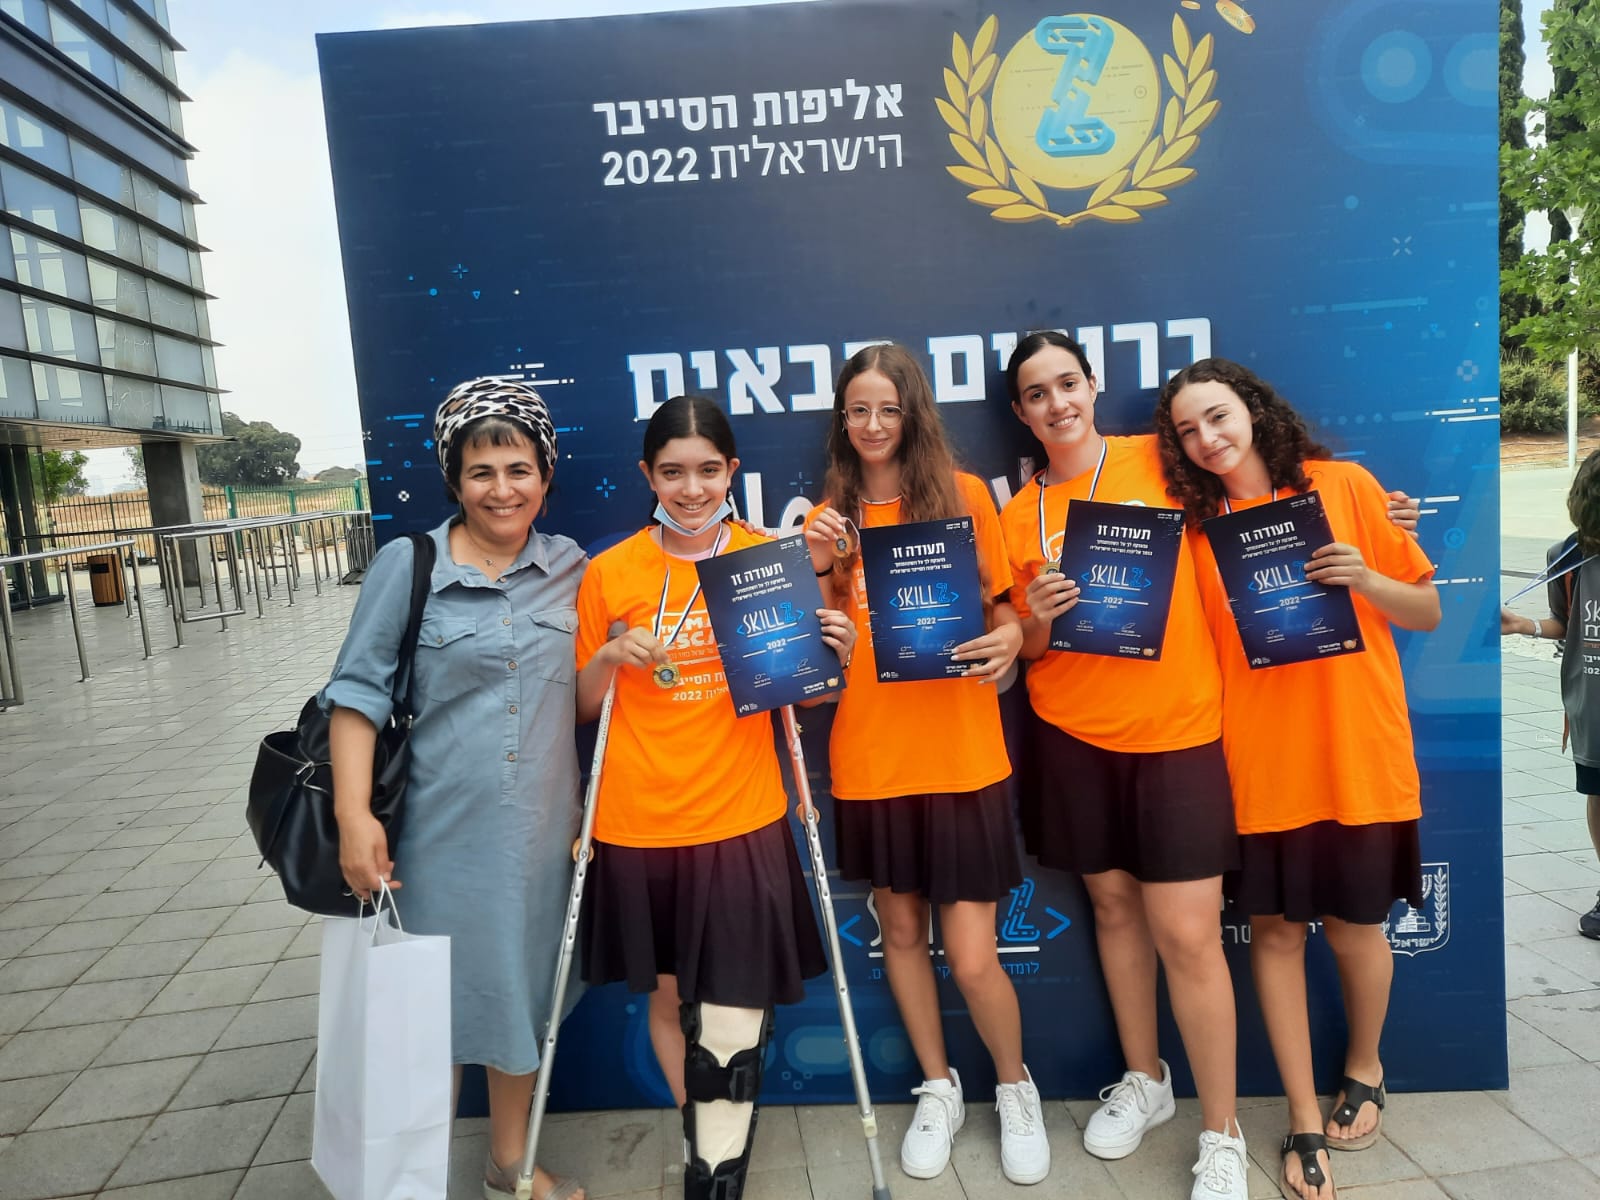 תלמידות אולפנת אמית גבעת שמואל בגמר אליפות הסייבר הישראלית